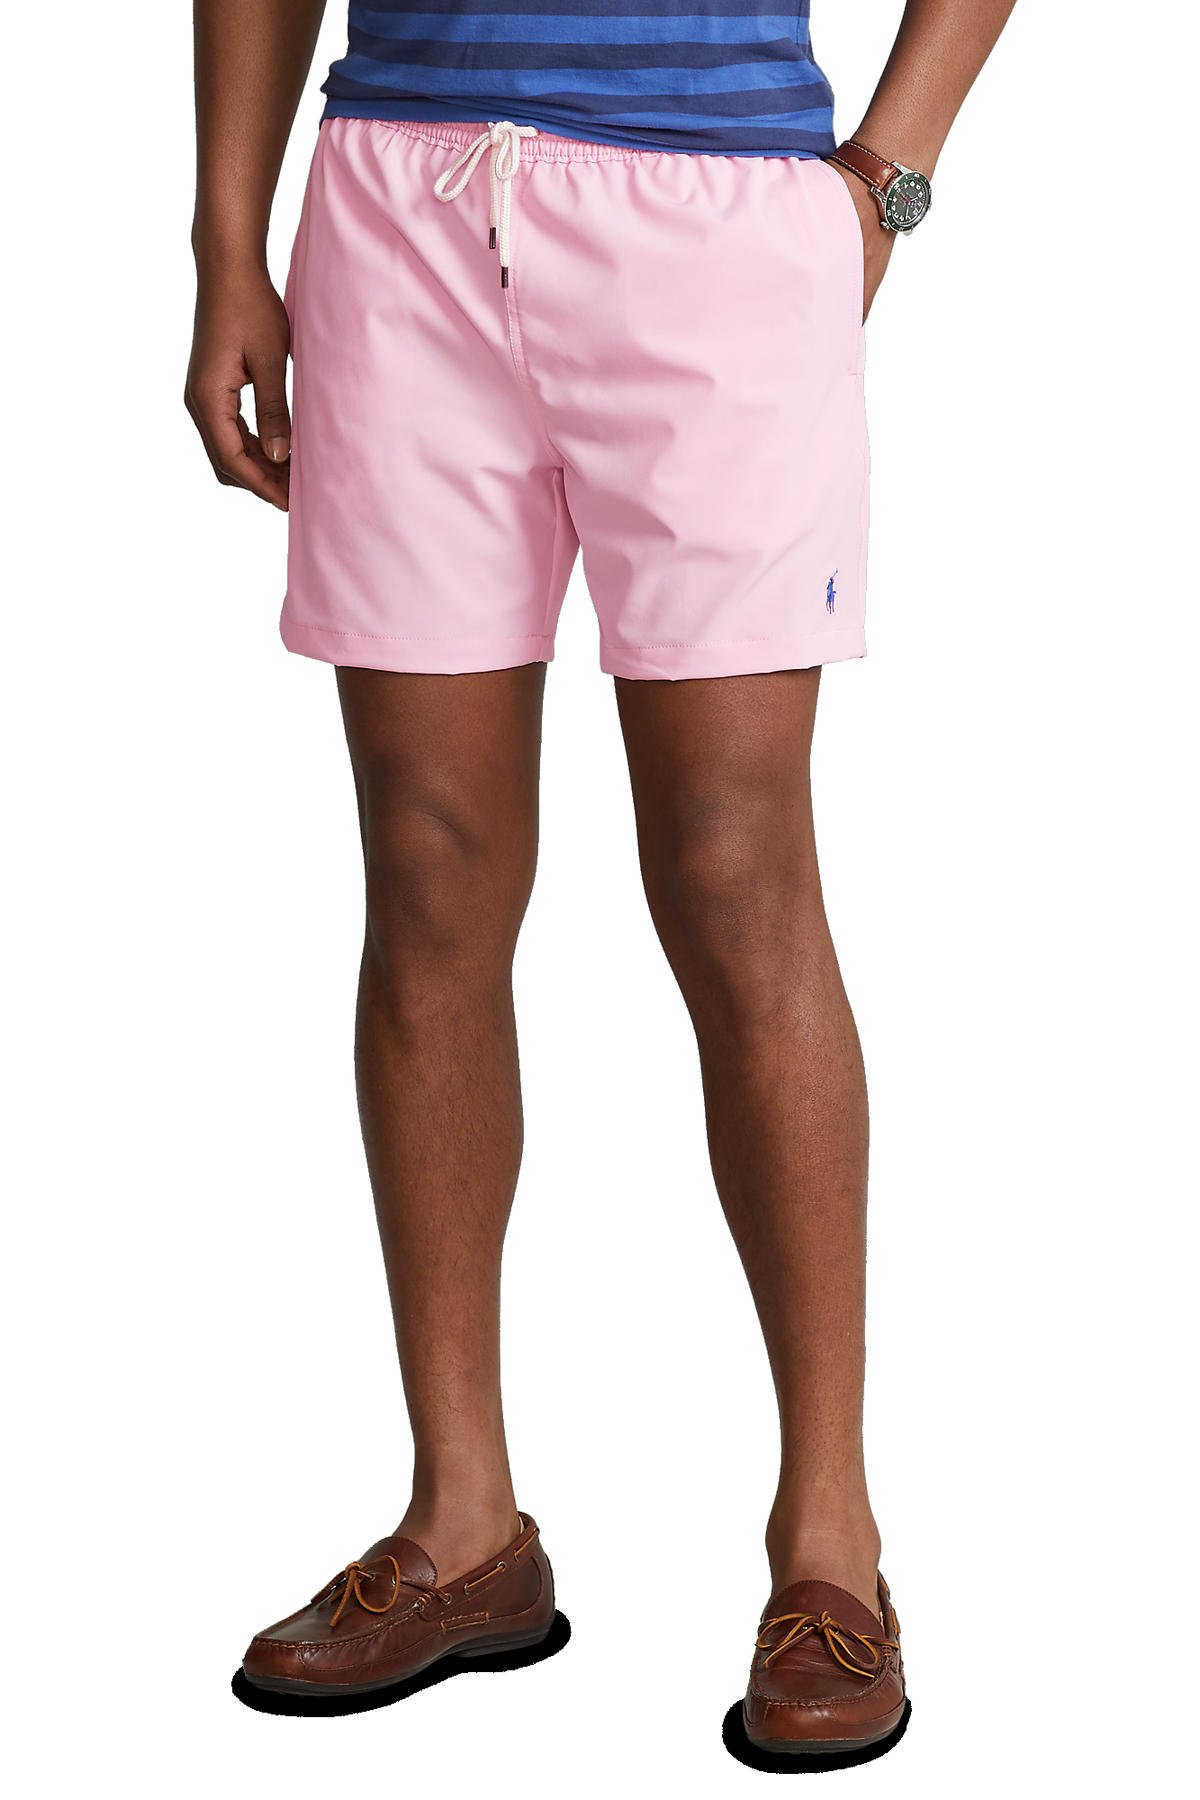 schuld Vereniging Meesterschap POLO Ralph Lauren zwemshort met geborduurd logo roze | wehkamp